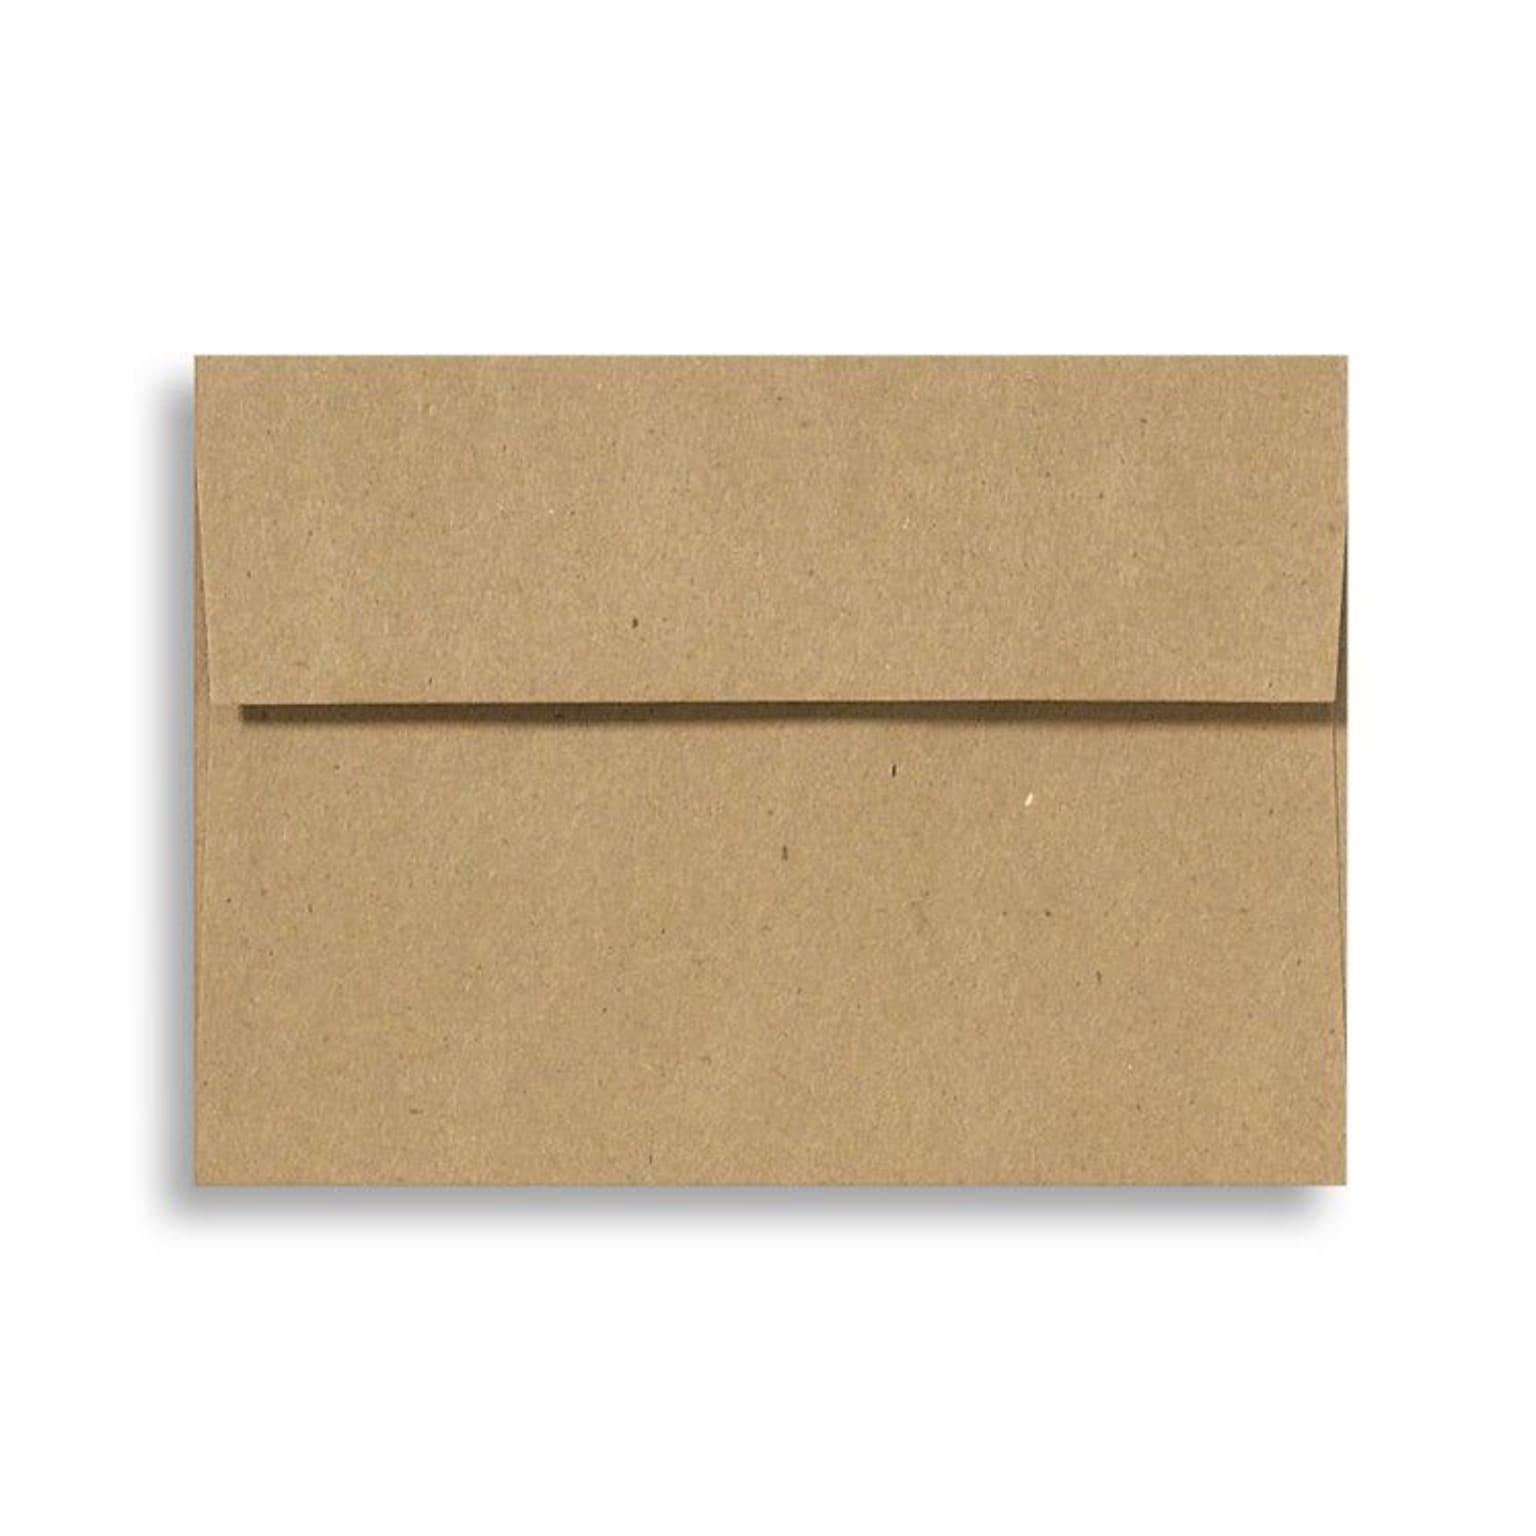 LUX® 70lb 4 1/4x6 1/4 Square Flap Envelopes W/Peel&Press; Grocery Bag Brown, 250/BX